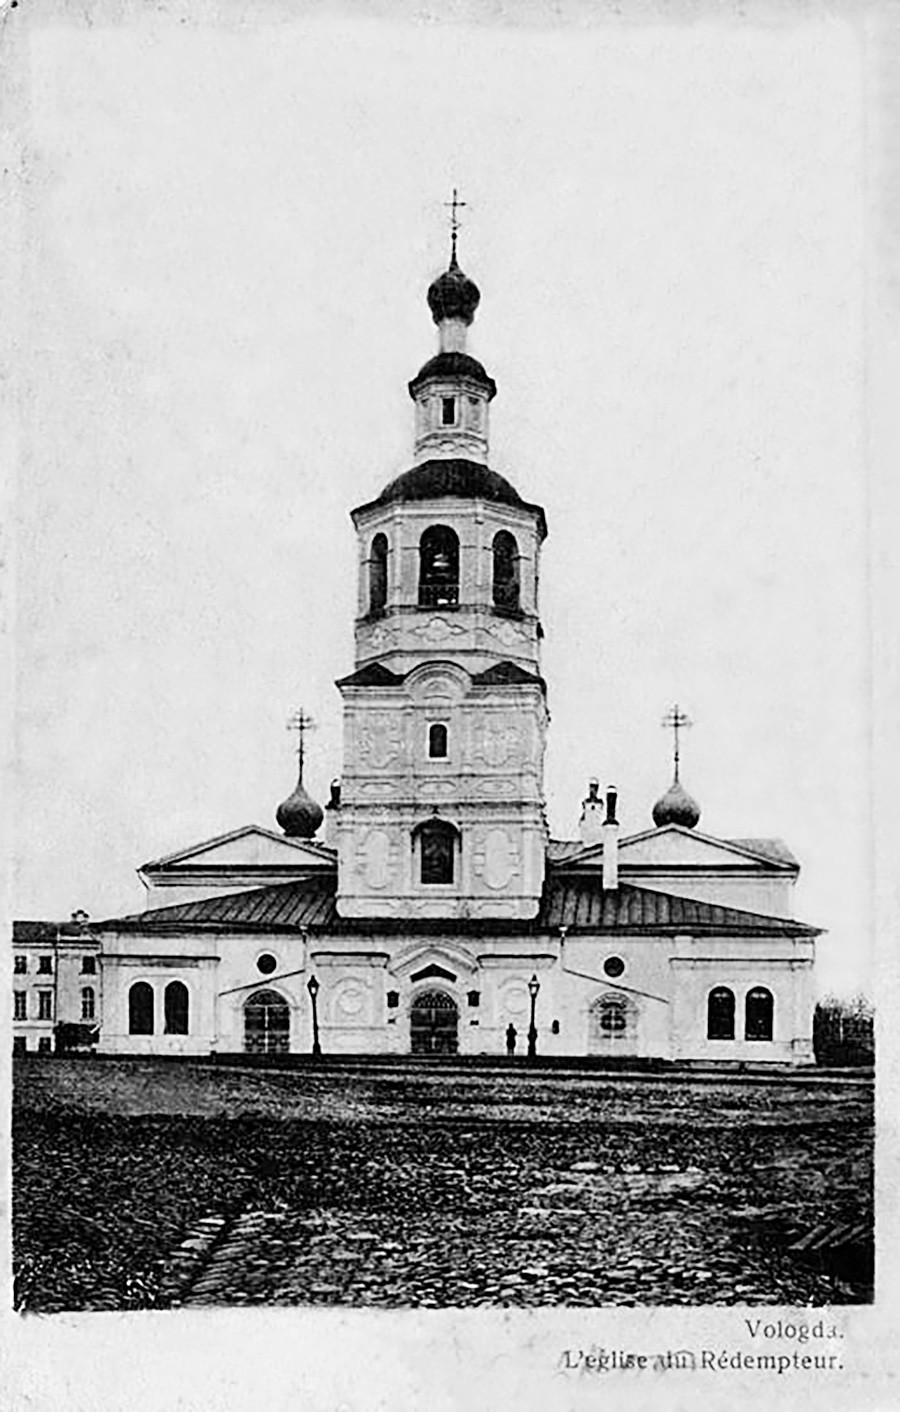  Spaso-Vsegradsky cathedral in Vologda, destroyed in 1972.